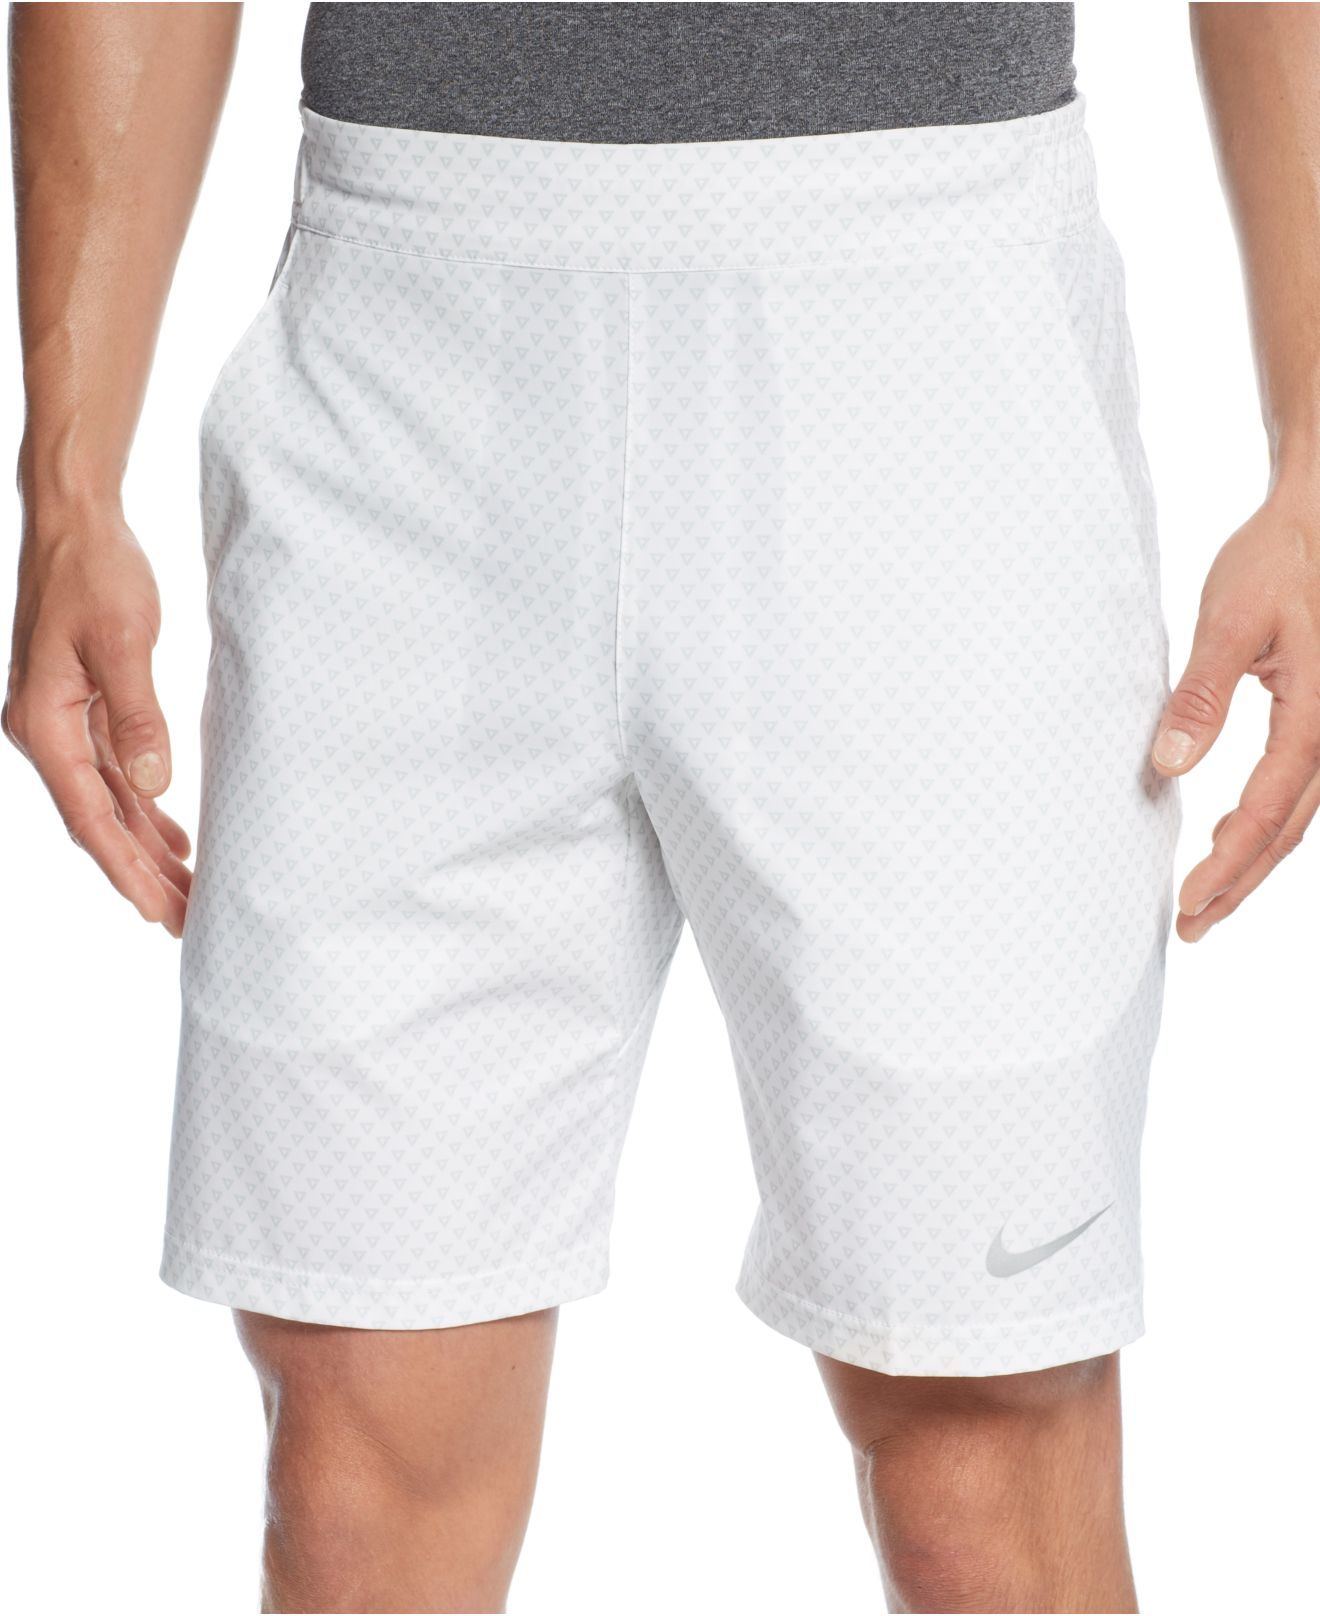 Lyst - Nike Premier Gladiator Shorts in White for Men